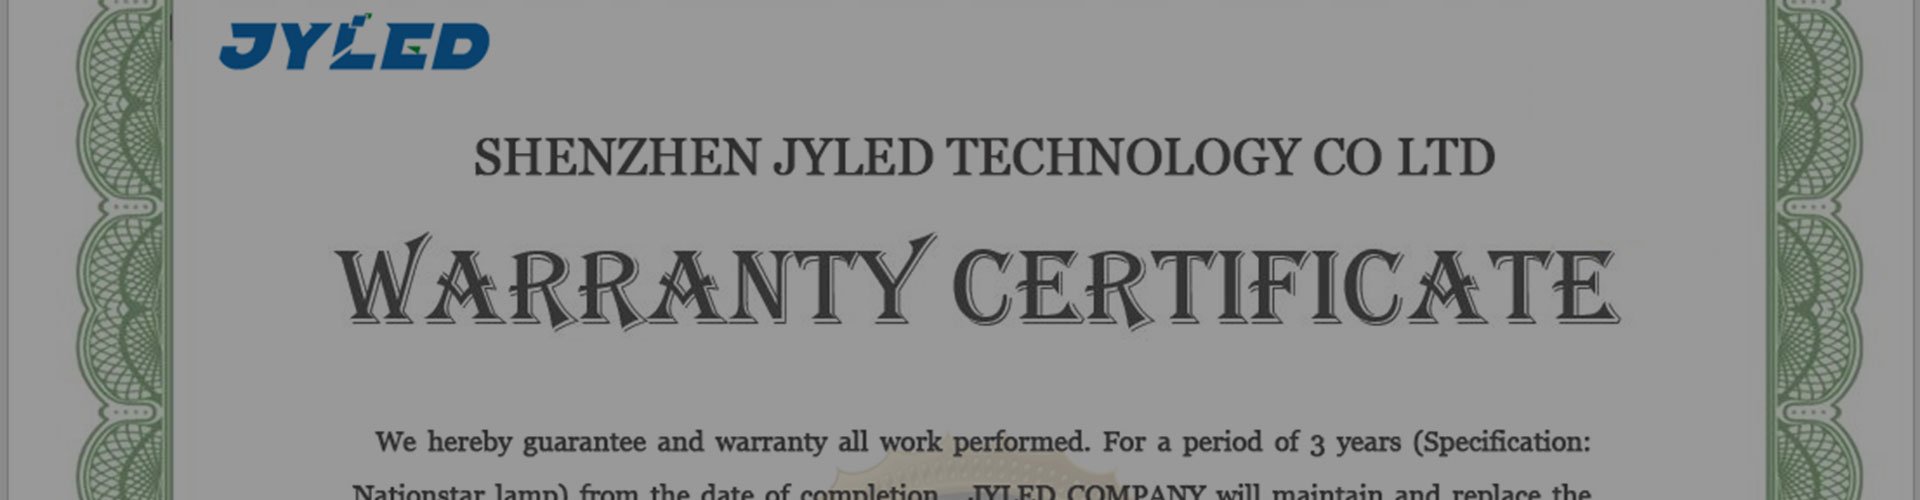 warranty certificate (Nationstar)